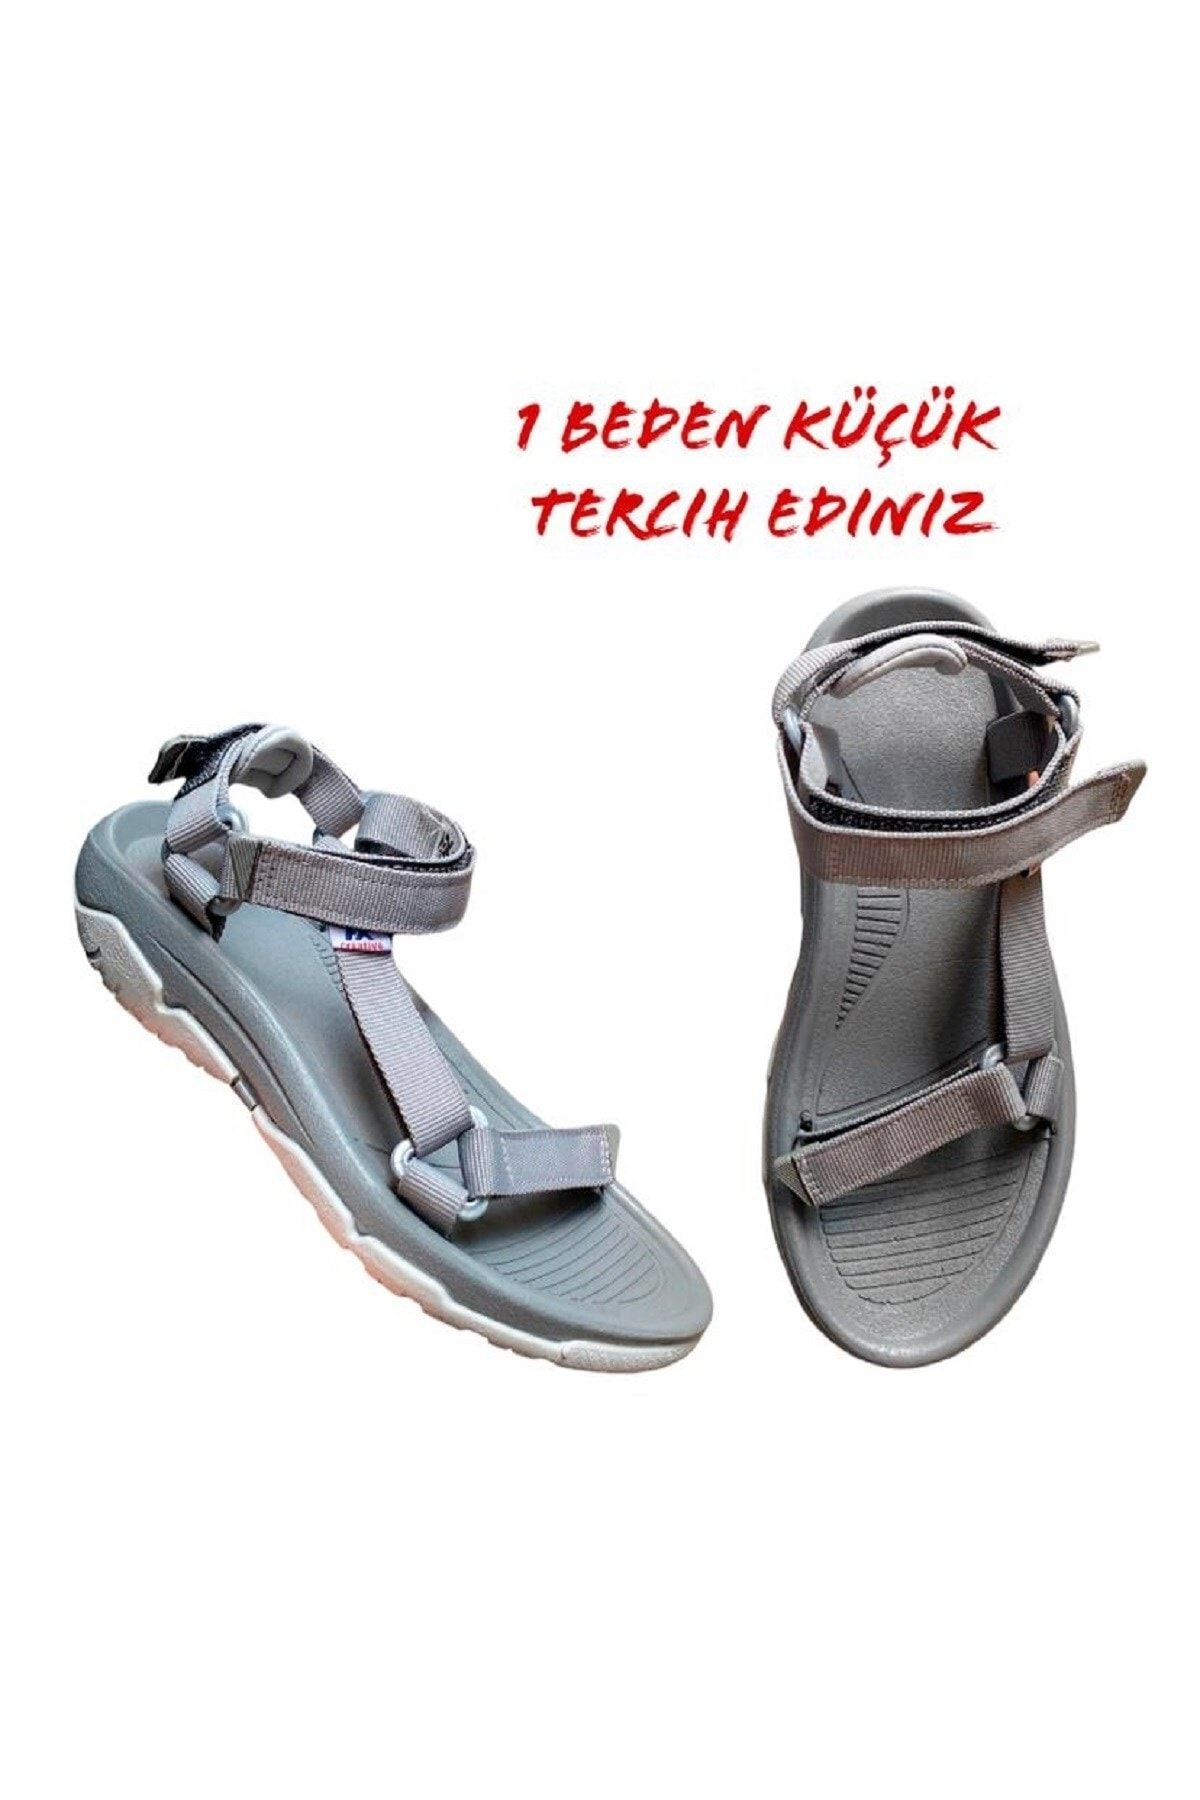 ALTUNTAŞ Fx Kaymaz Taban Cırt Cırtlı Çocuk Spor Sandalet Modeli - Gri ( Geniş Kalıp )